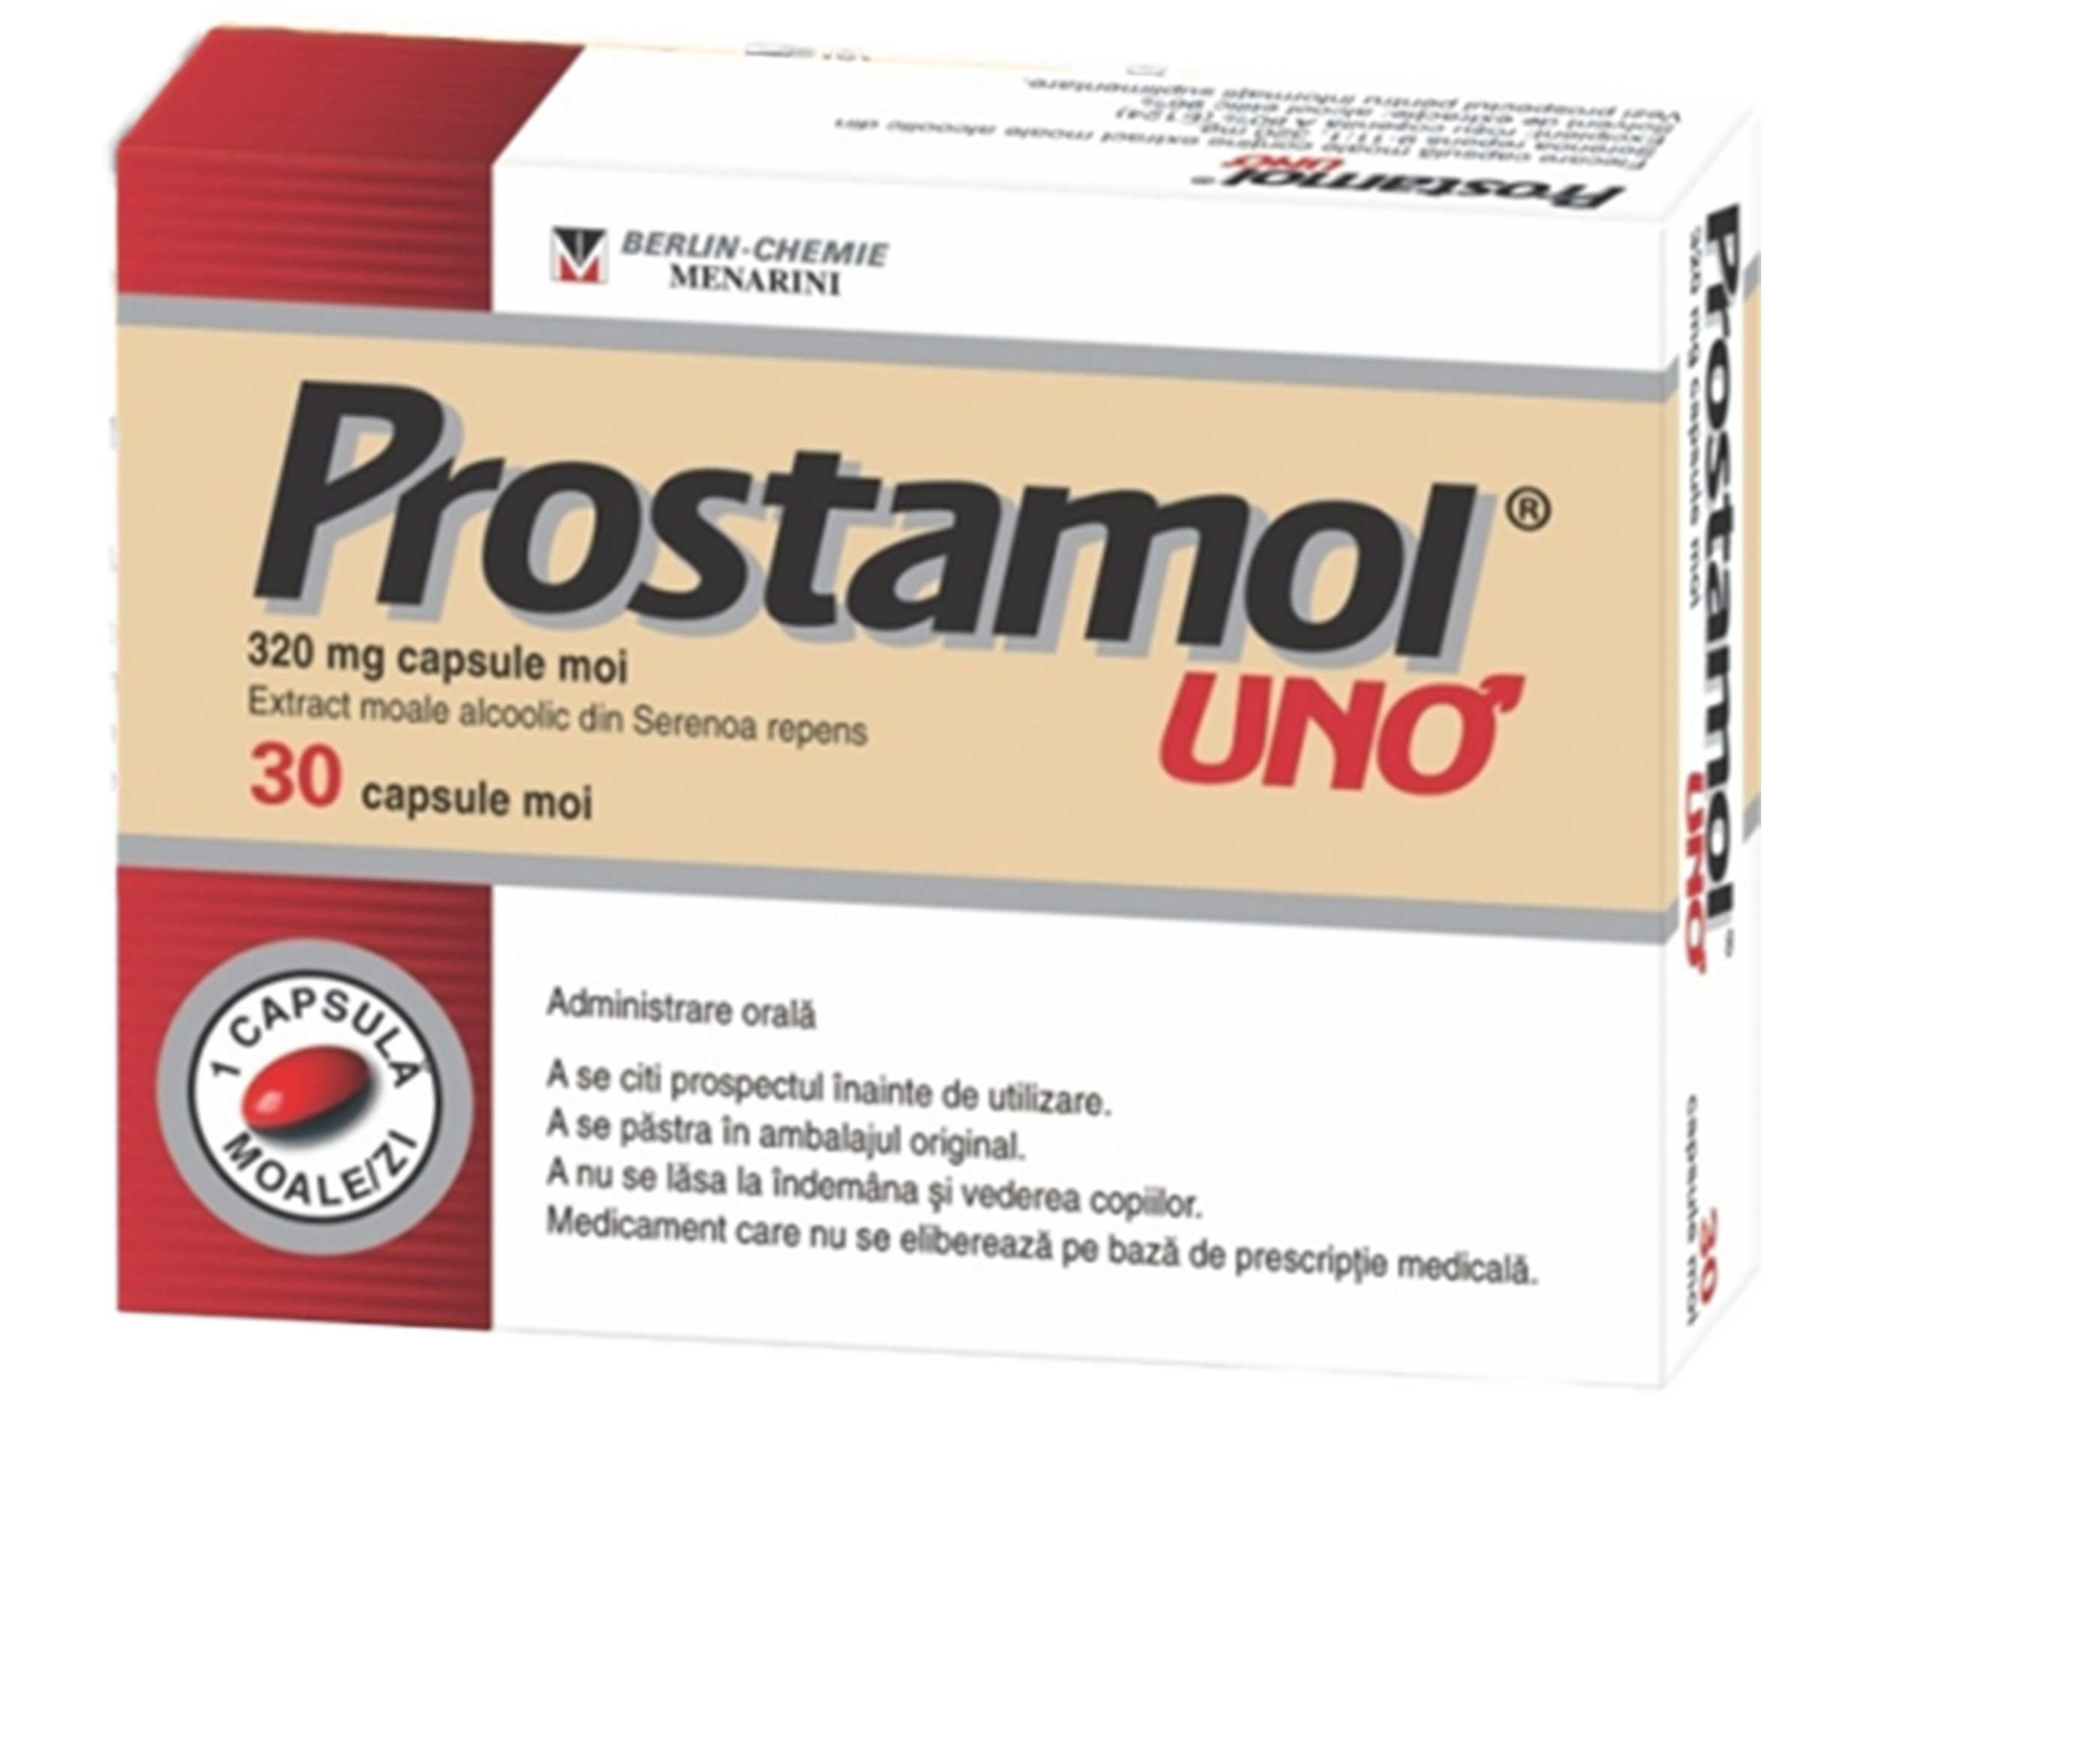 OTC - medicamente fara reteta - Prostamol Uno 320mg x 30 capsule moi, medik-on.ro